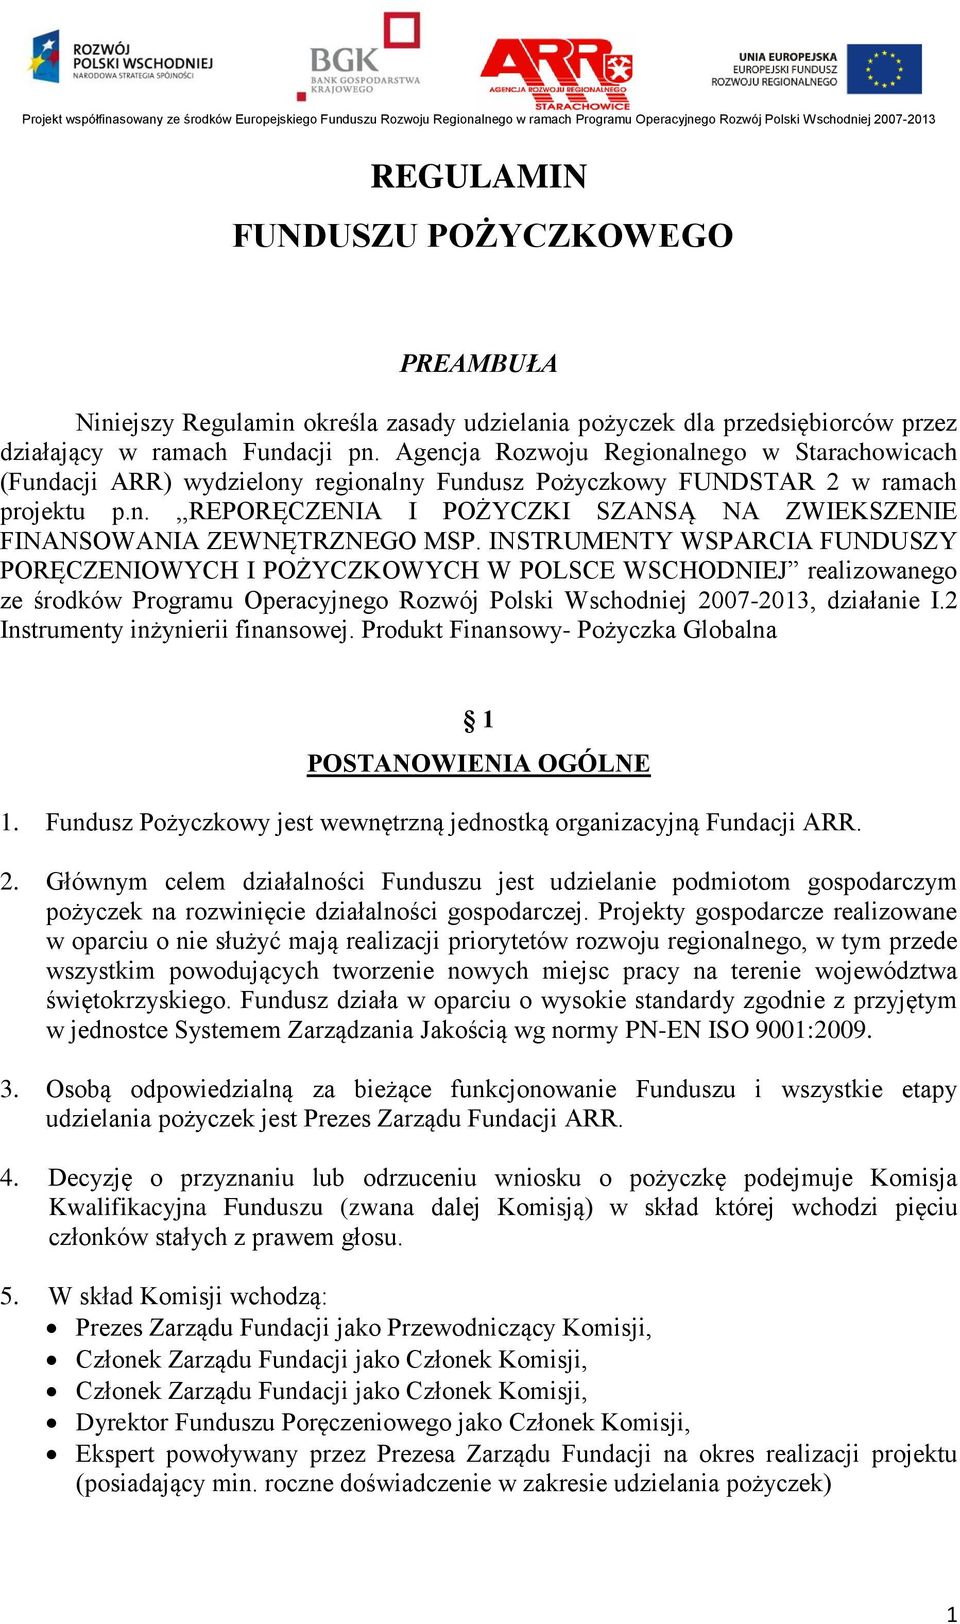 INSTRUMENTY WSPARCIA FUNDUSZY PORĘCZENIOWYCH I POŻYCZKOWYCH W POLSCE WSCHODNIEJ realizowanego ze środków Programu Operacyjnego Rozwój Polski Wschodniej 2007-2013, działanie I.